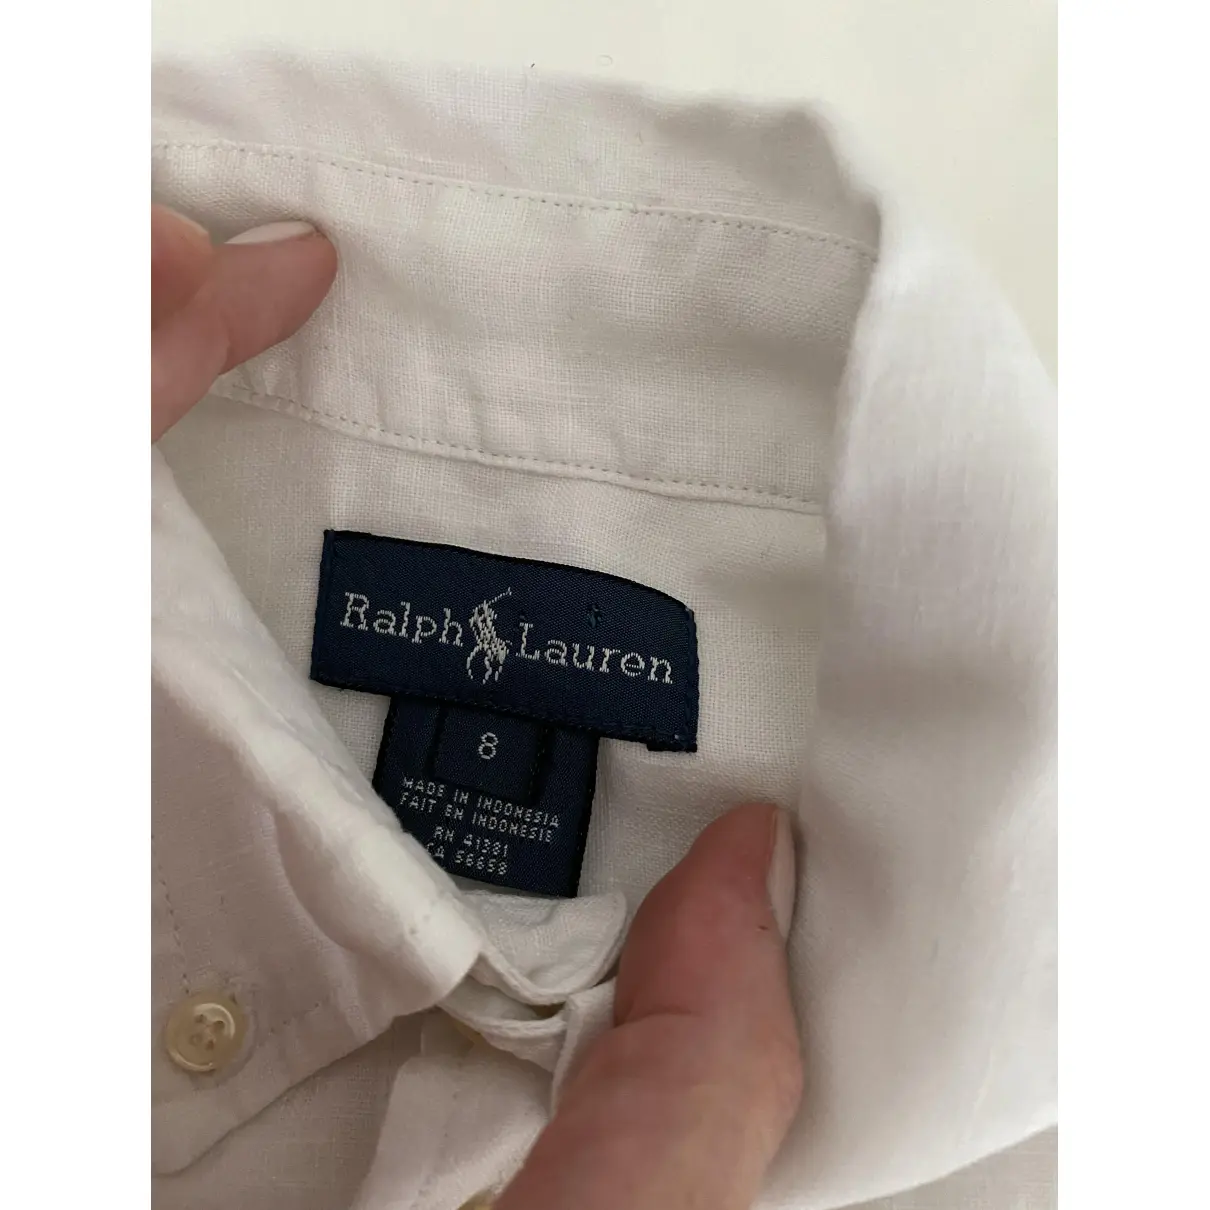 Buy Ralph Lauren Linen shirt online